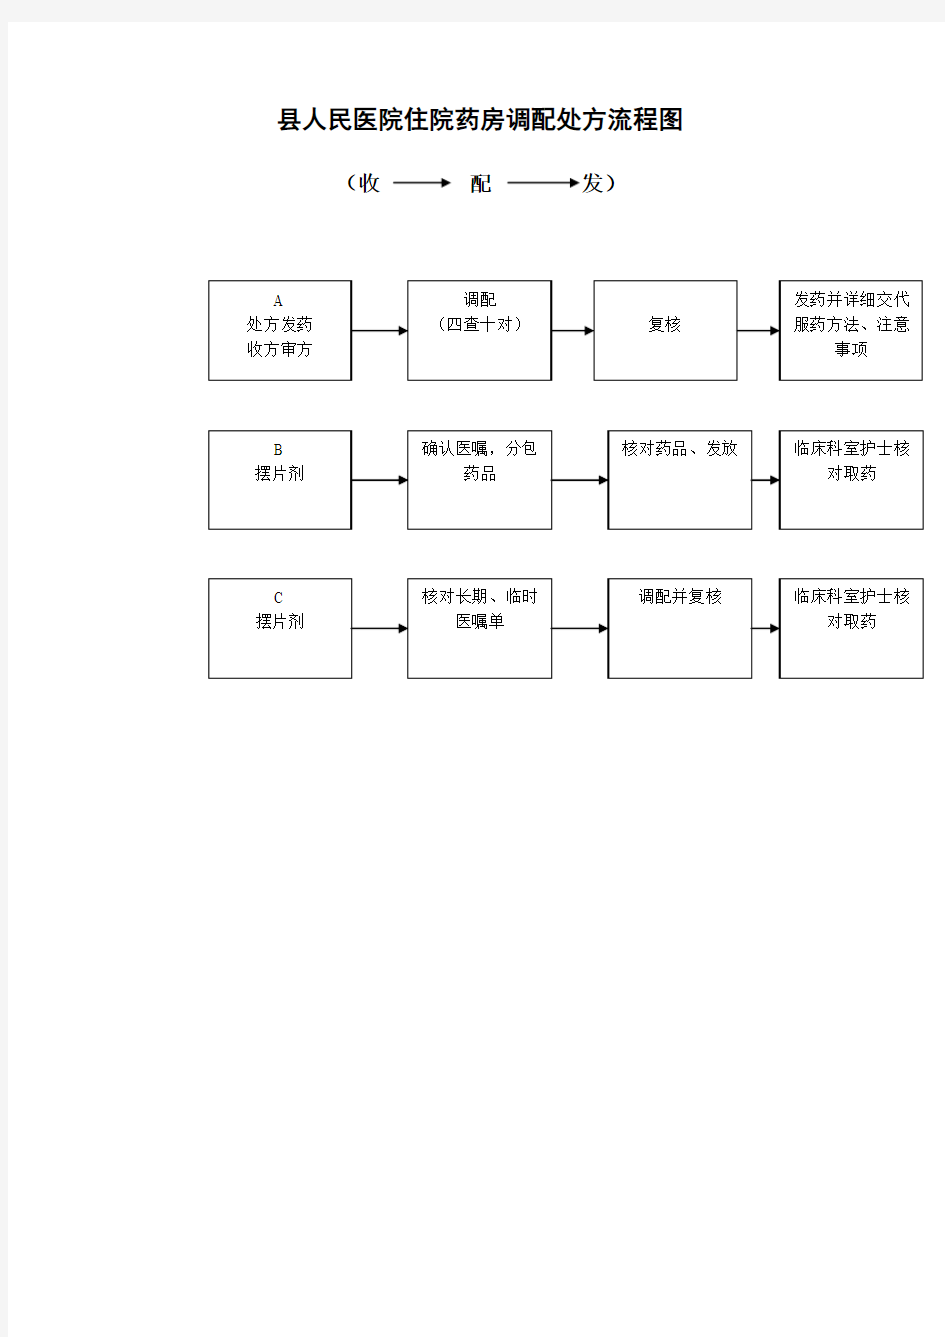 县人民医院住院药房调配处方流程图